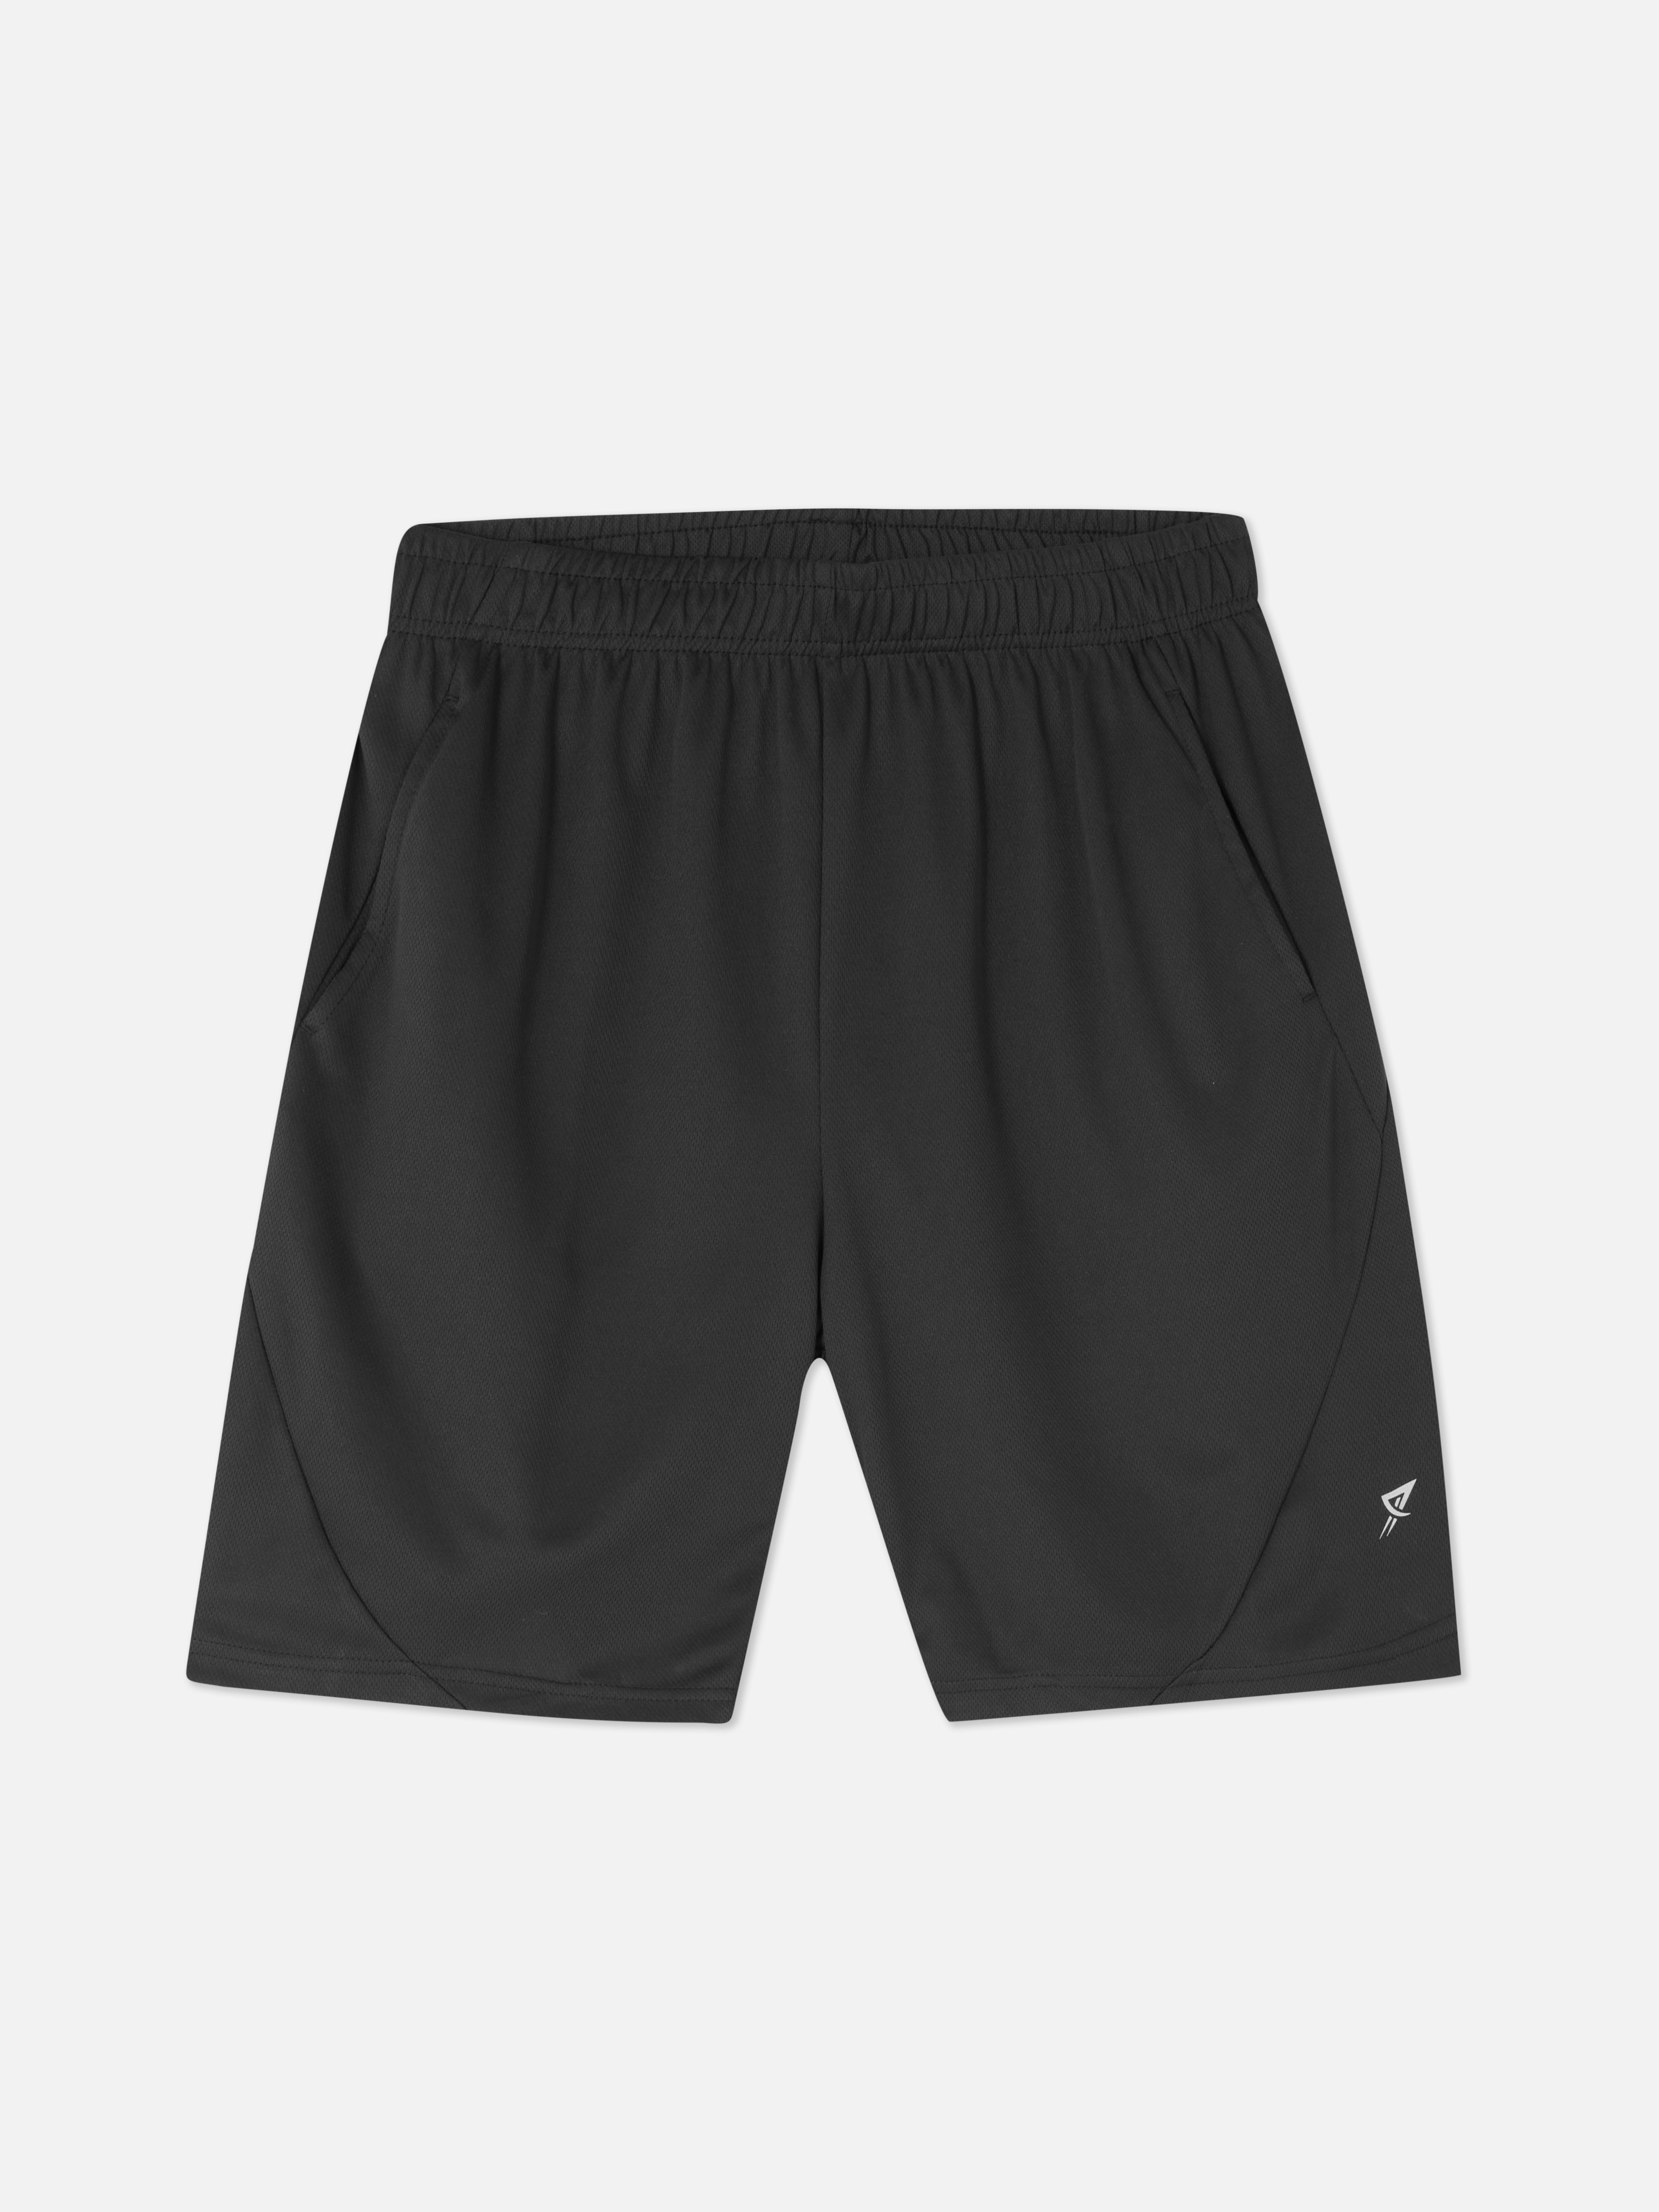 Pantalones cortos de malla para el gimnasio | Ropa deportiva para hombre | Ropa para hombre | Nuestra línea de moda masculina | Todos los productos | Primark España